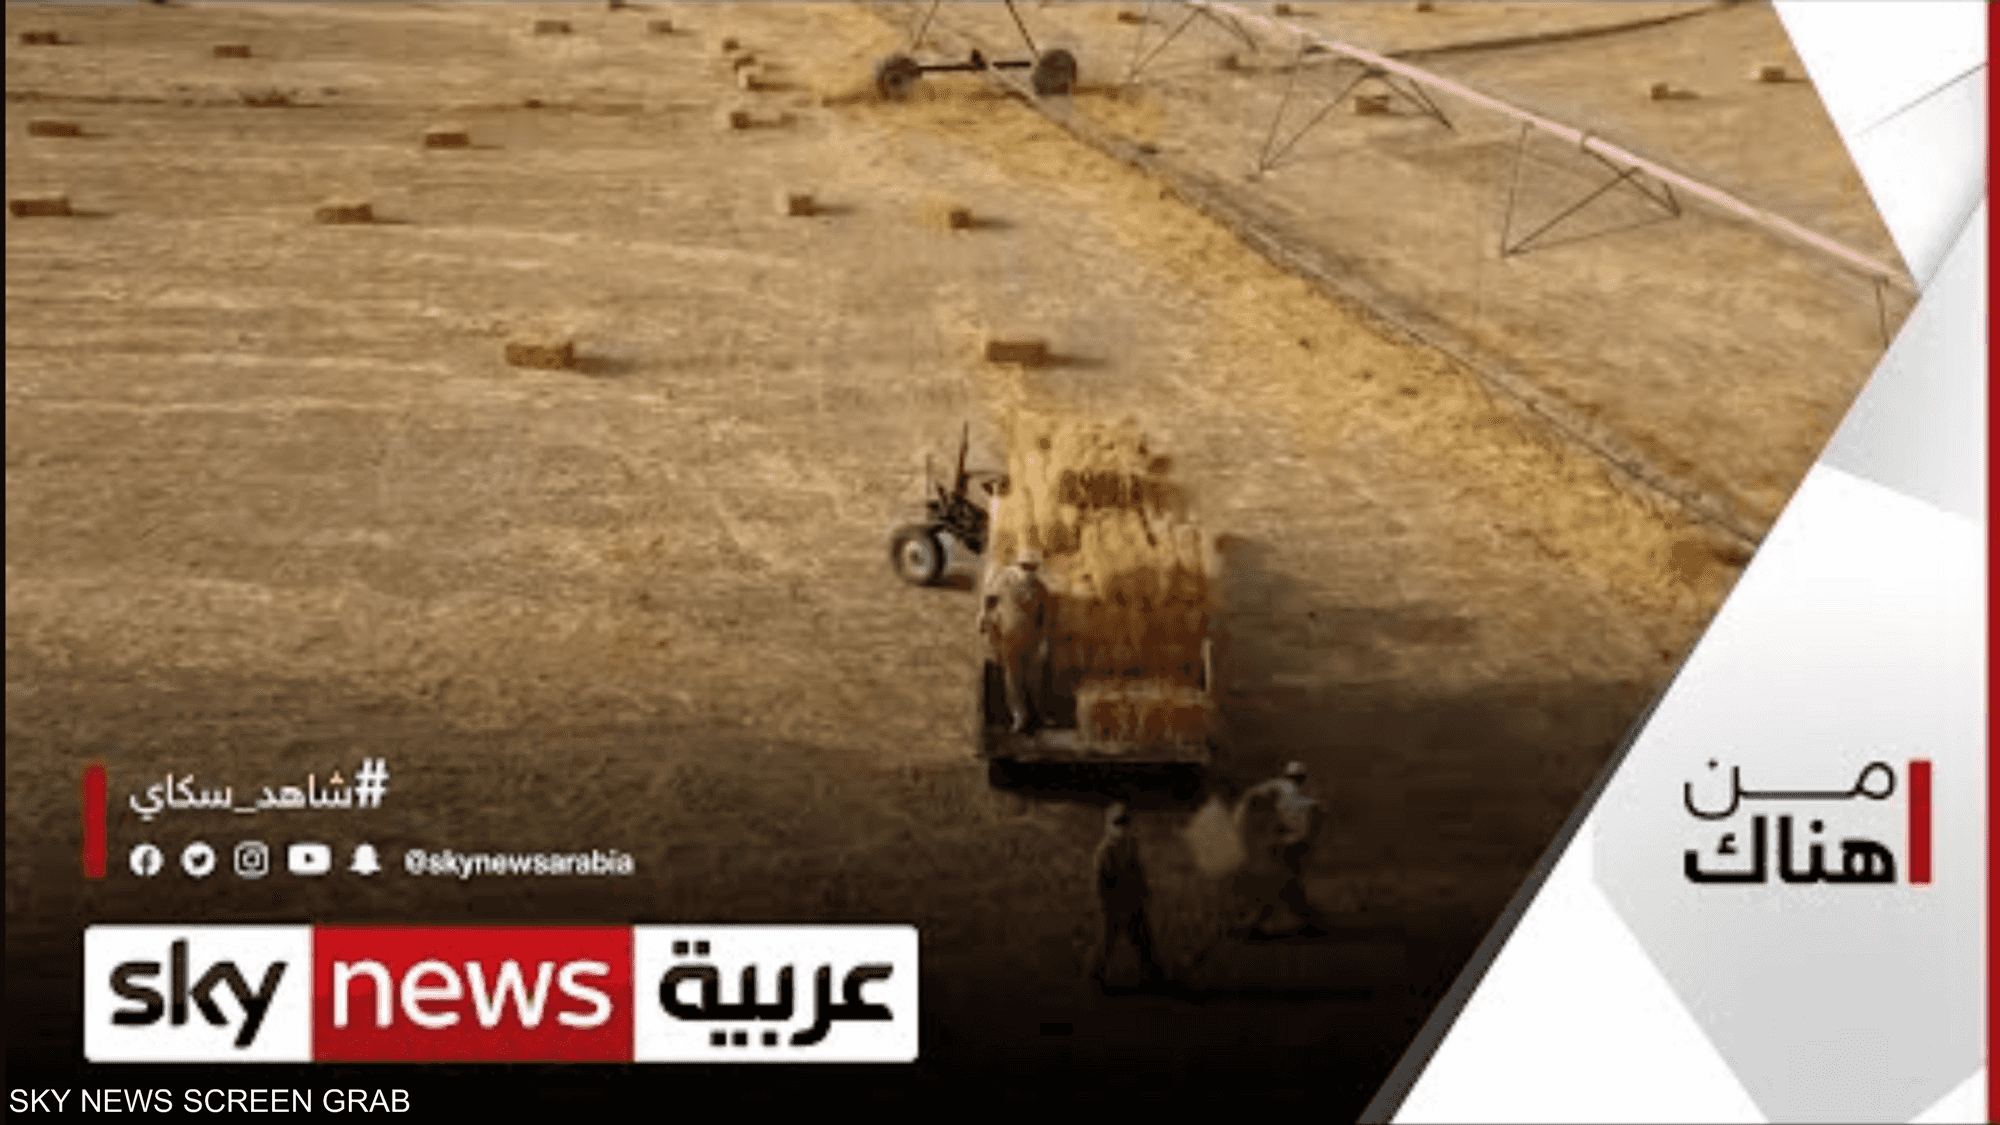 زراعة القمح في الكويت..وقصة تجربة رائدة وتحديات